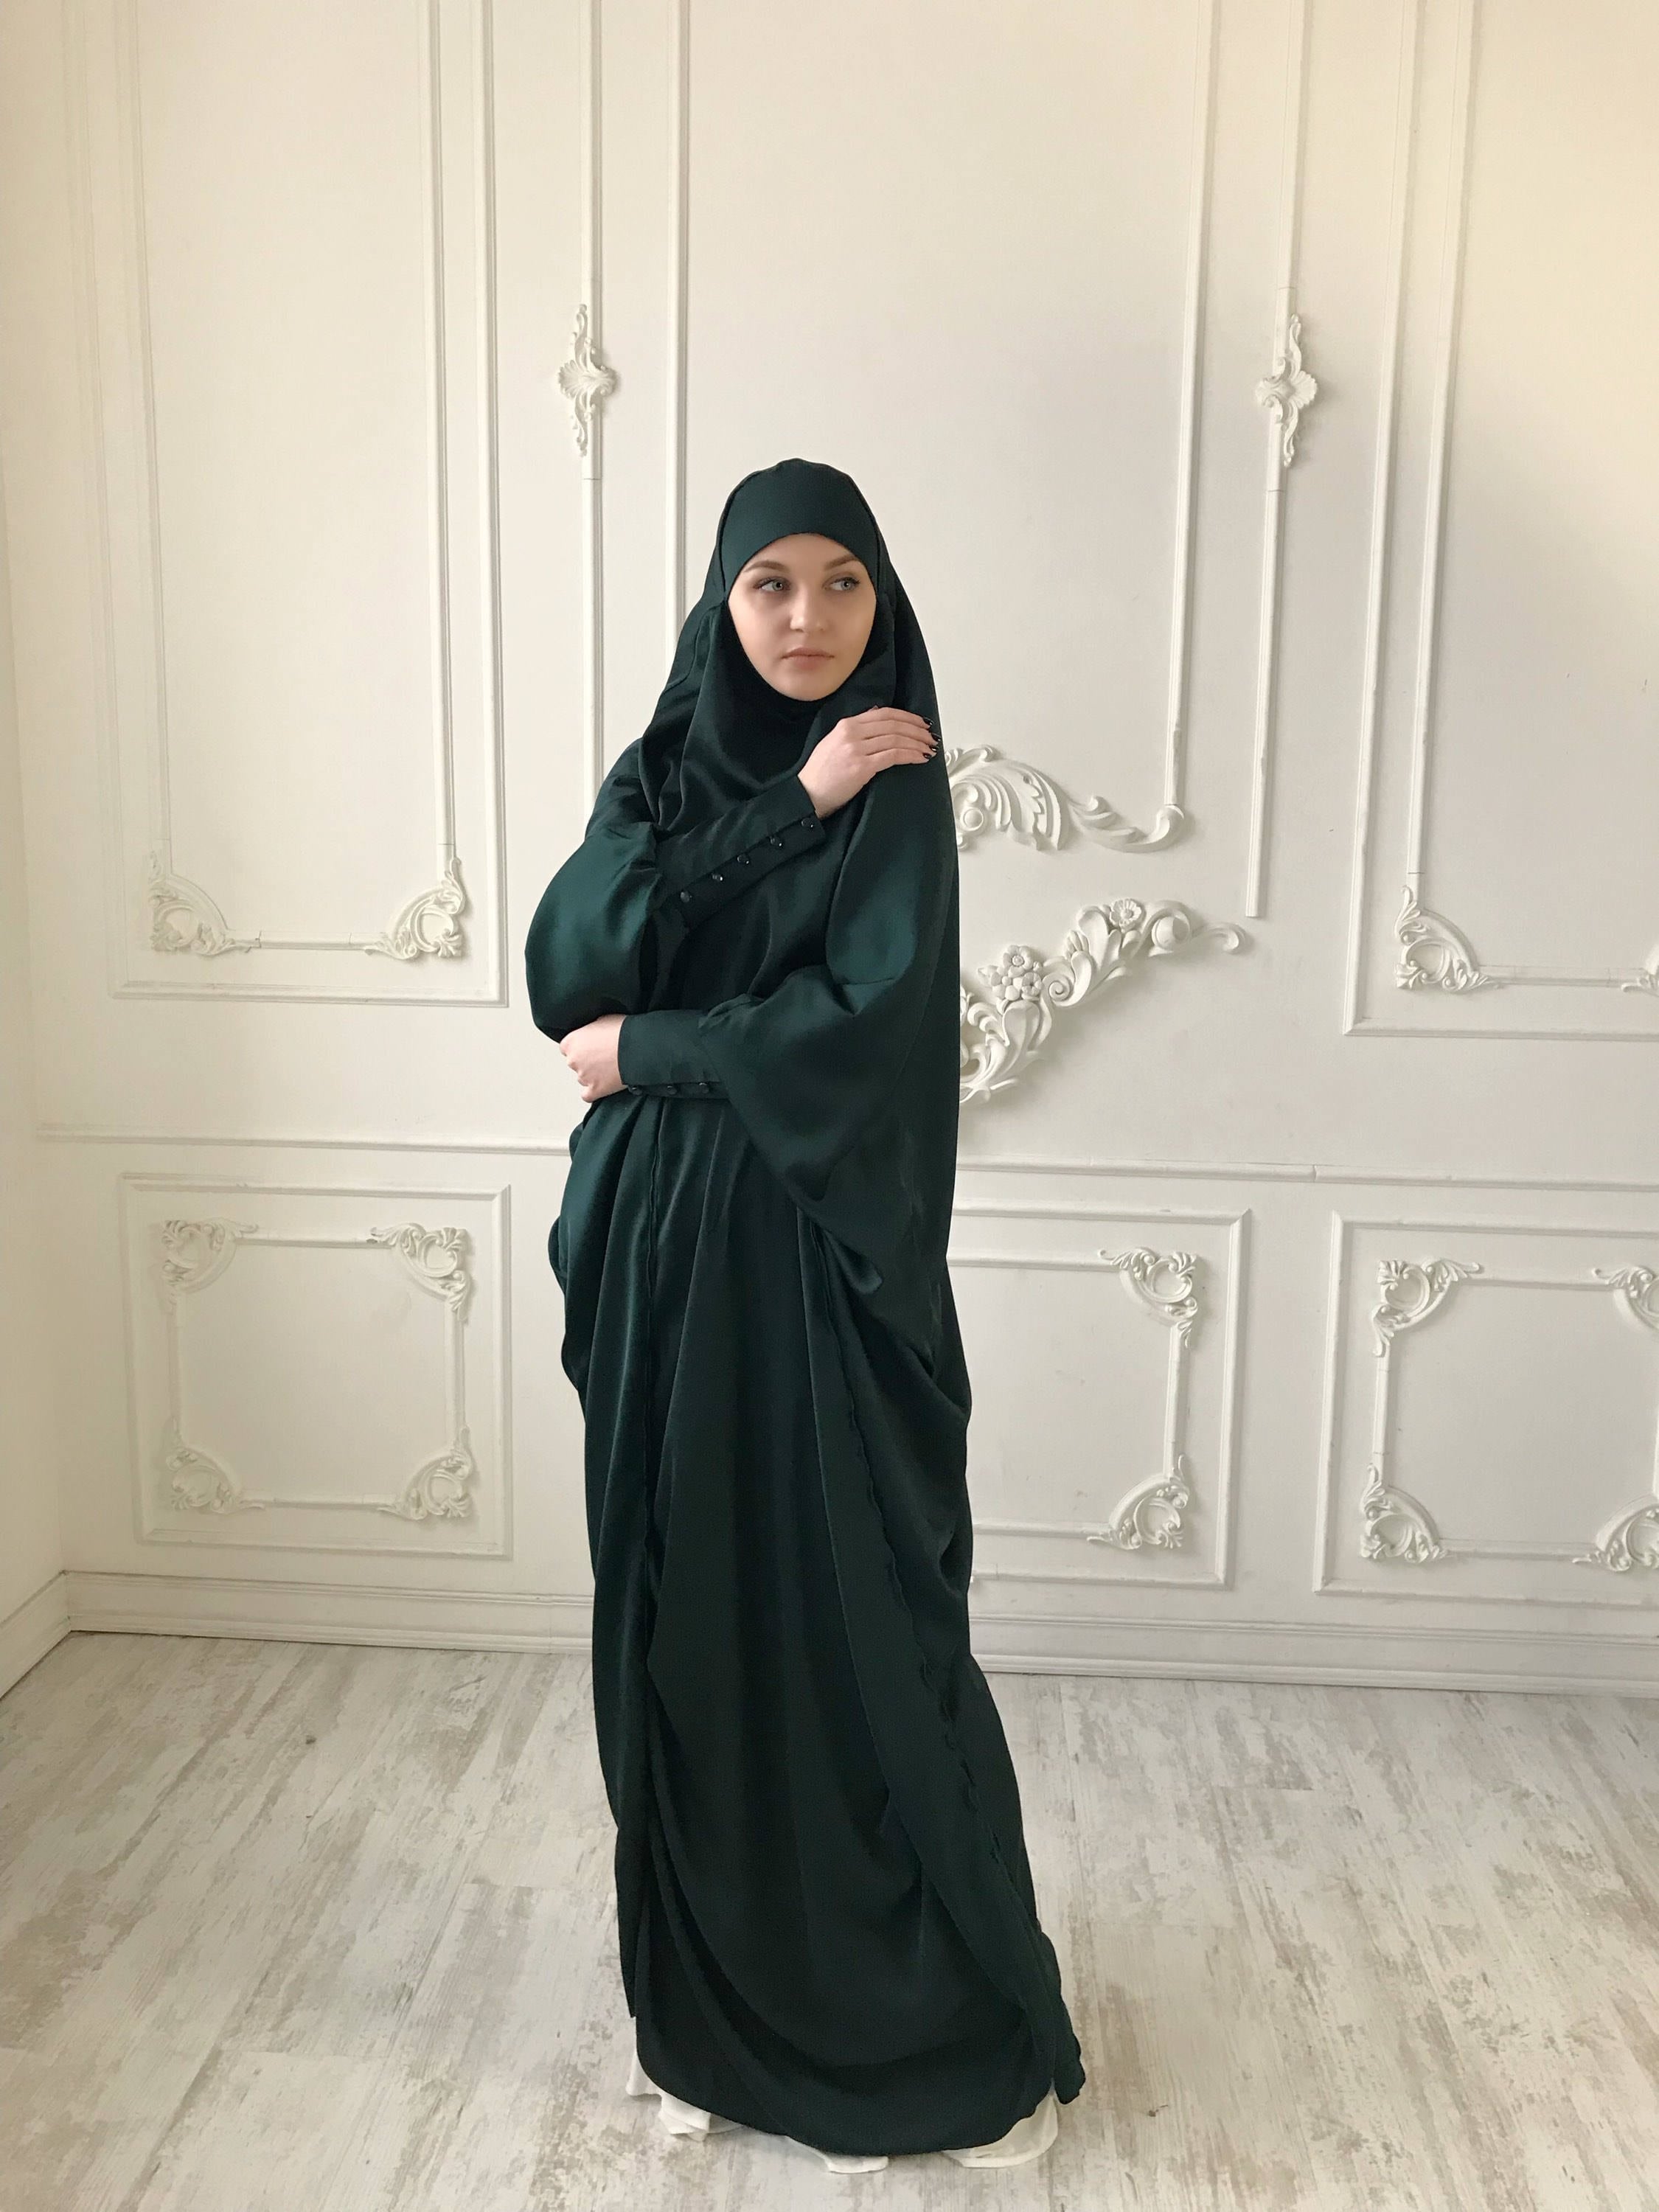 Arabian Abaya Gown Ideas | Abayas fashion, Islamic fashion, Abaya designs